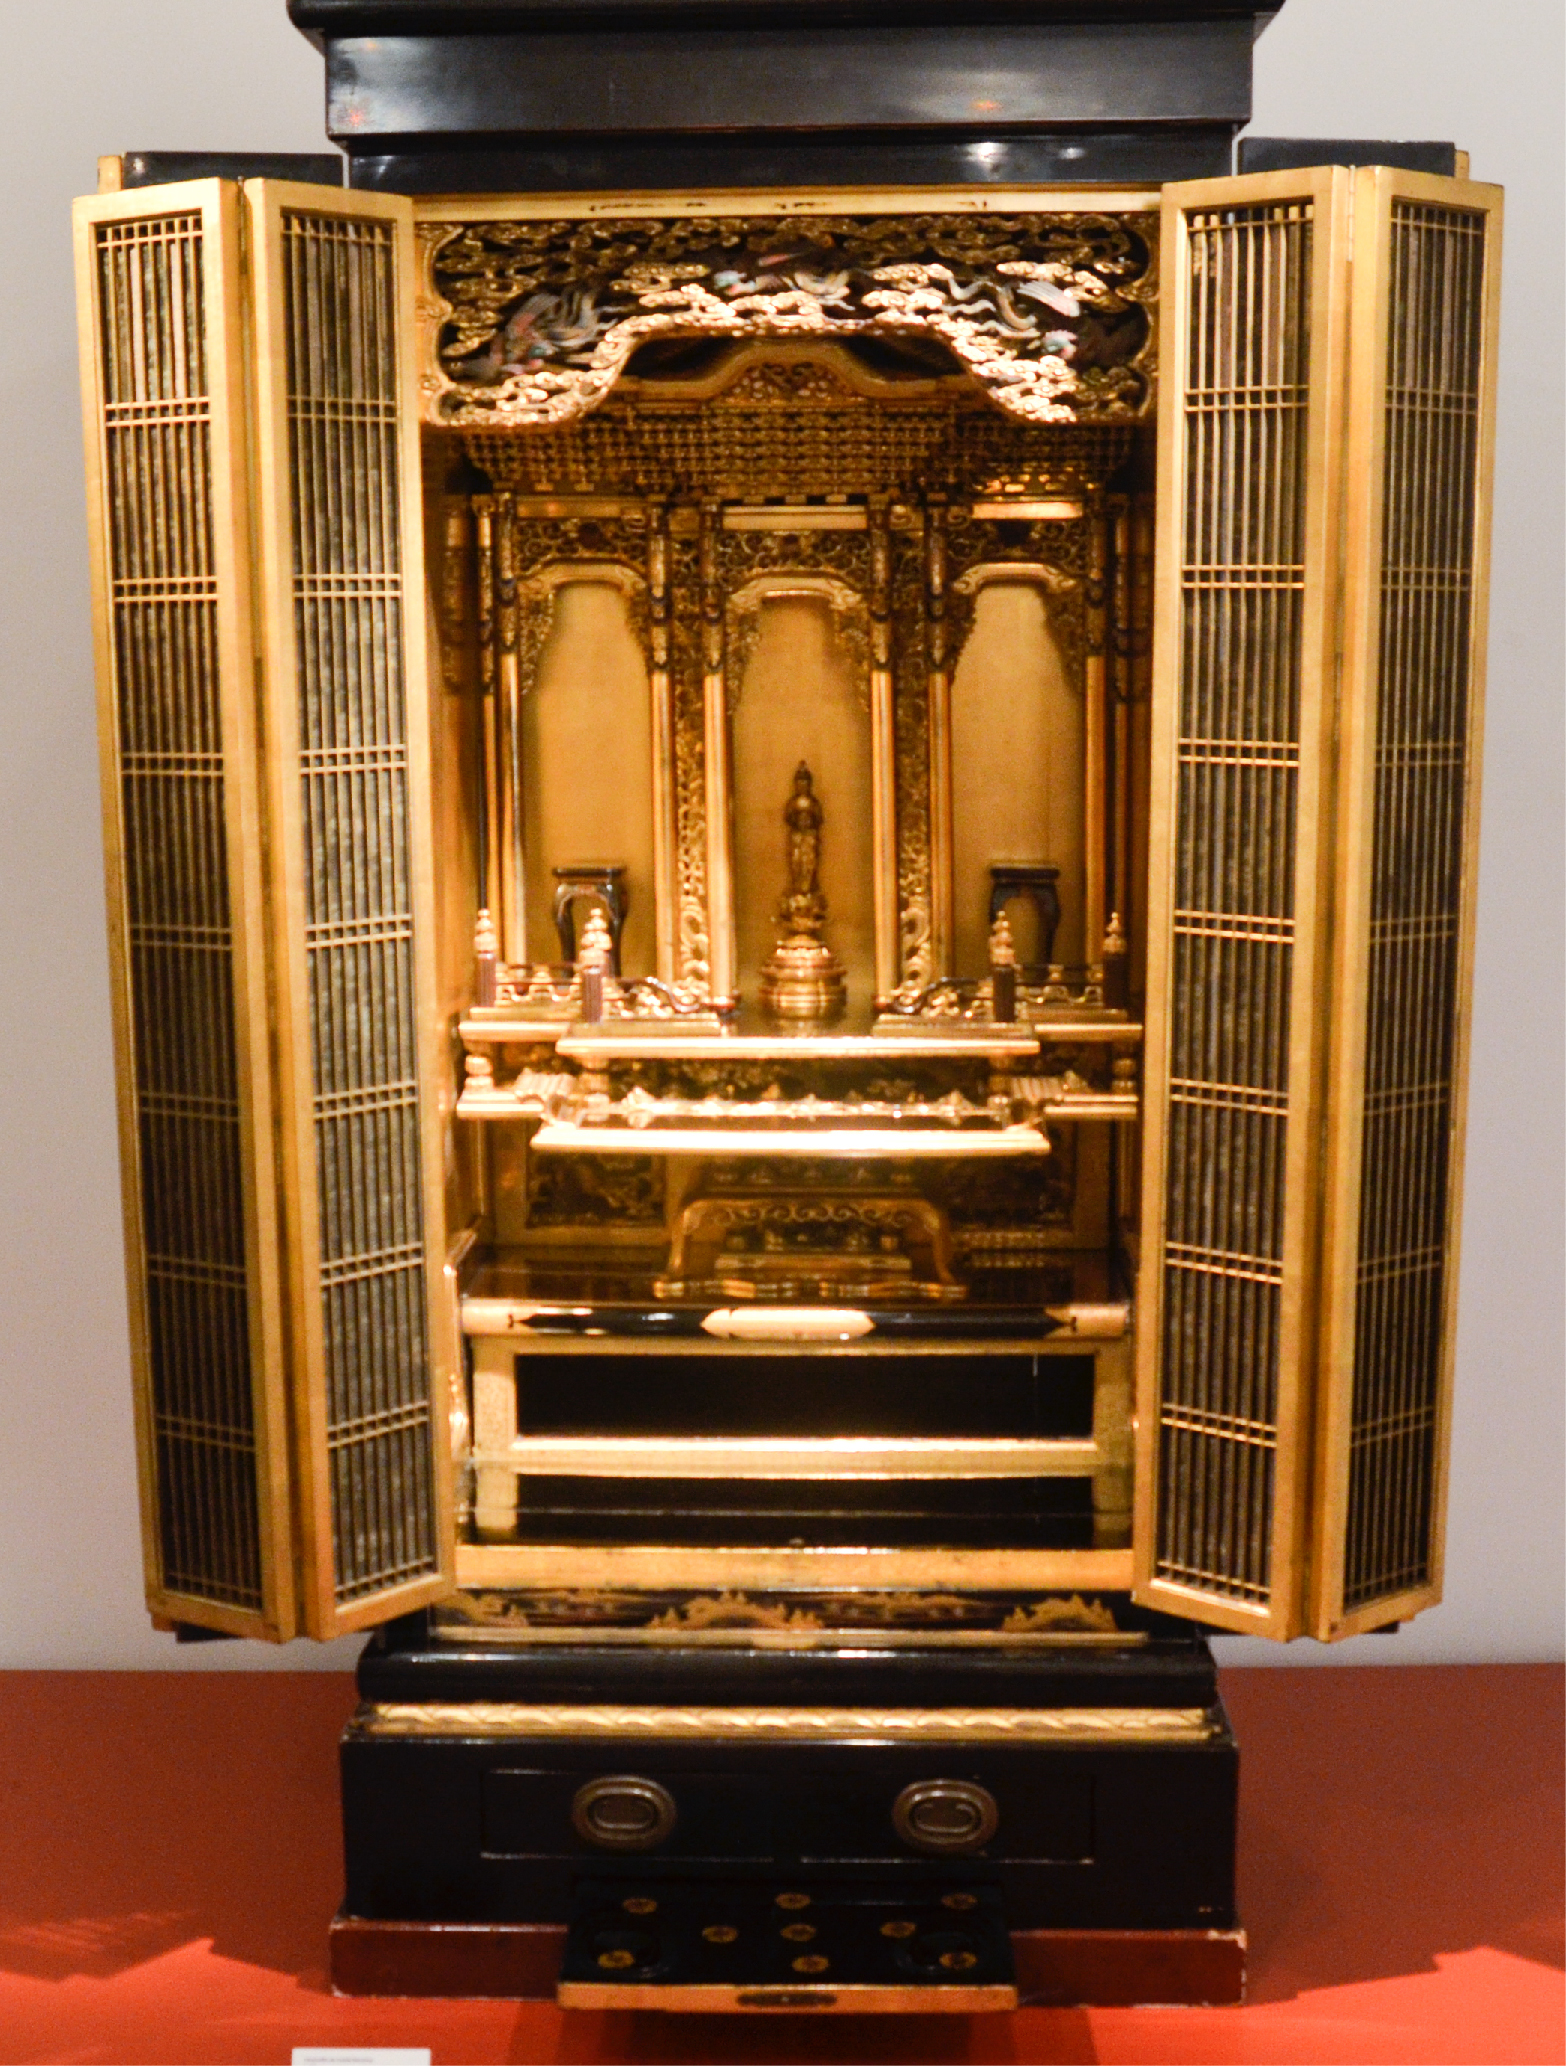 Imagen de un butsudan o altar budista japonés